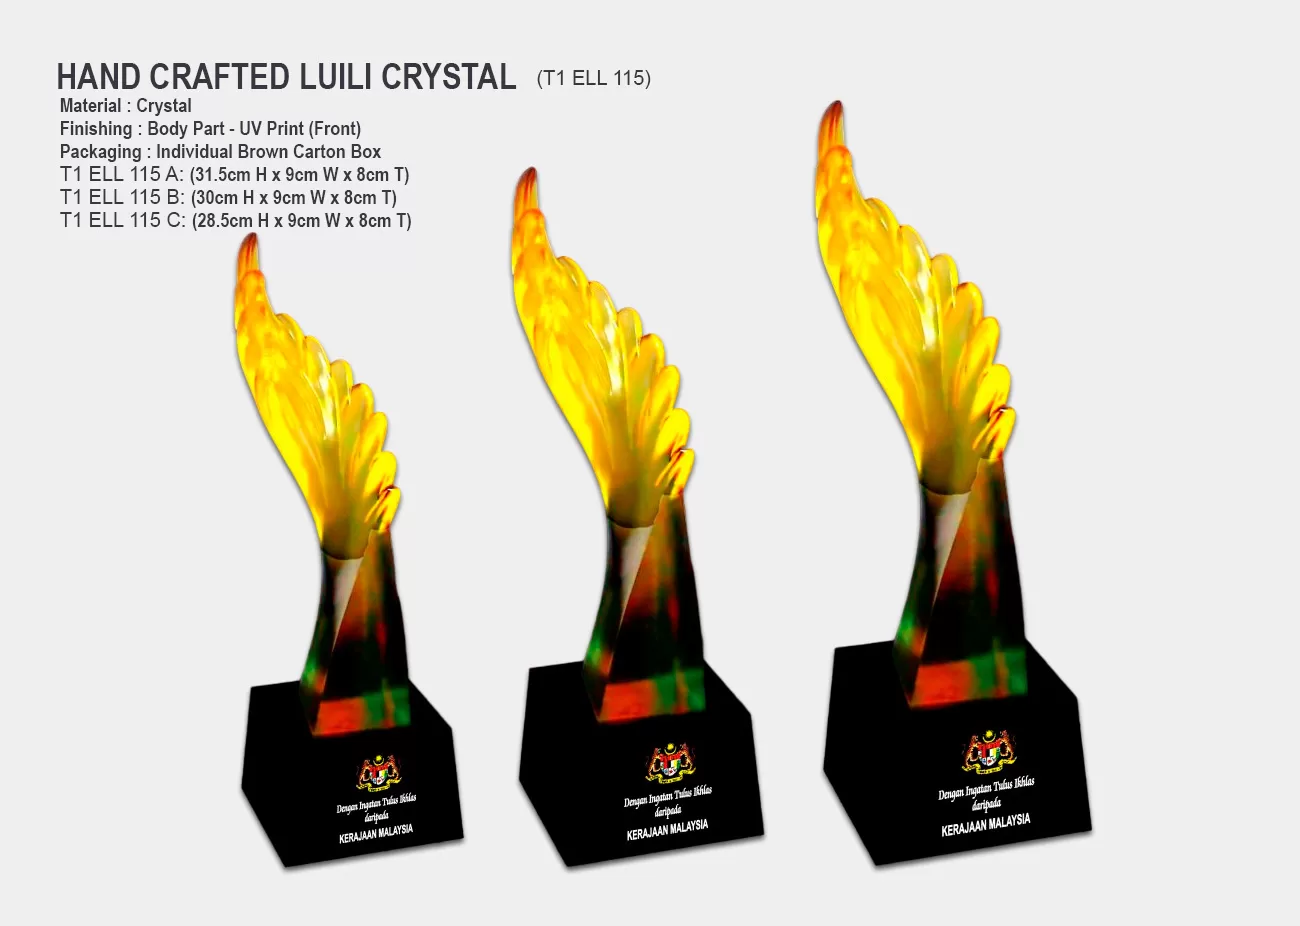 liuli crystal trophy